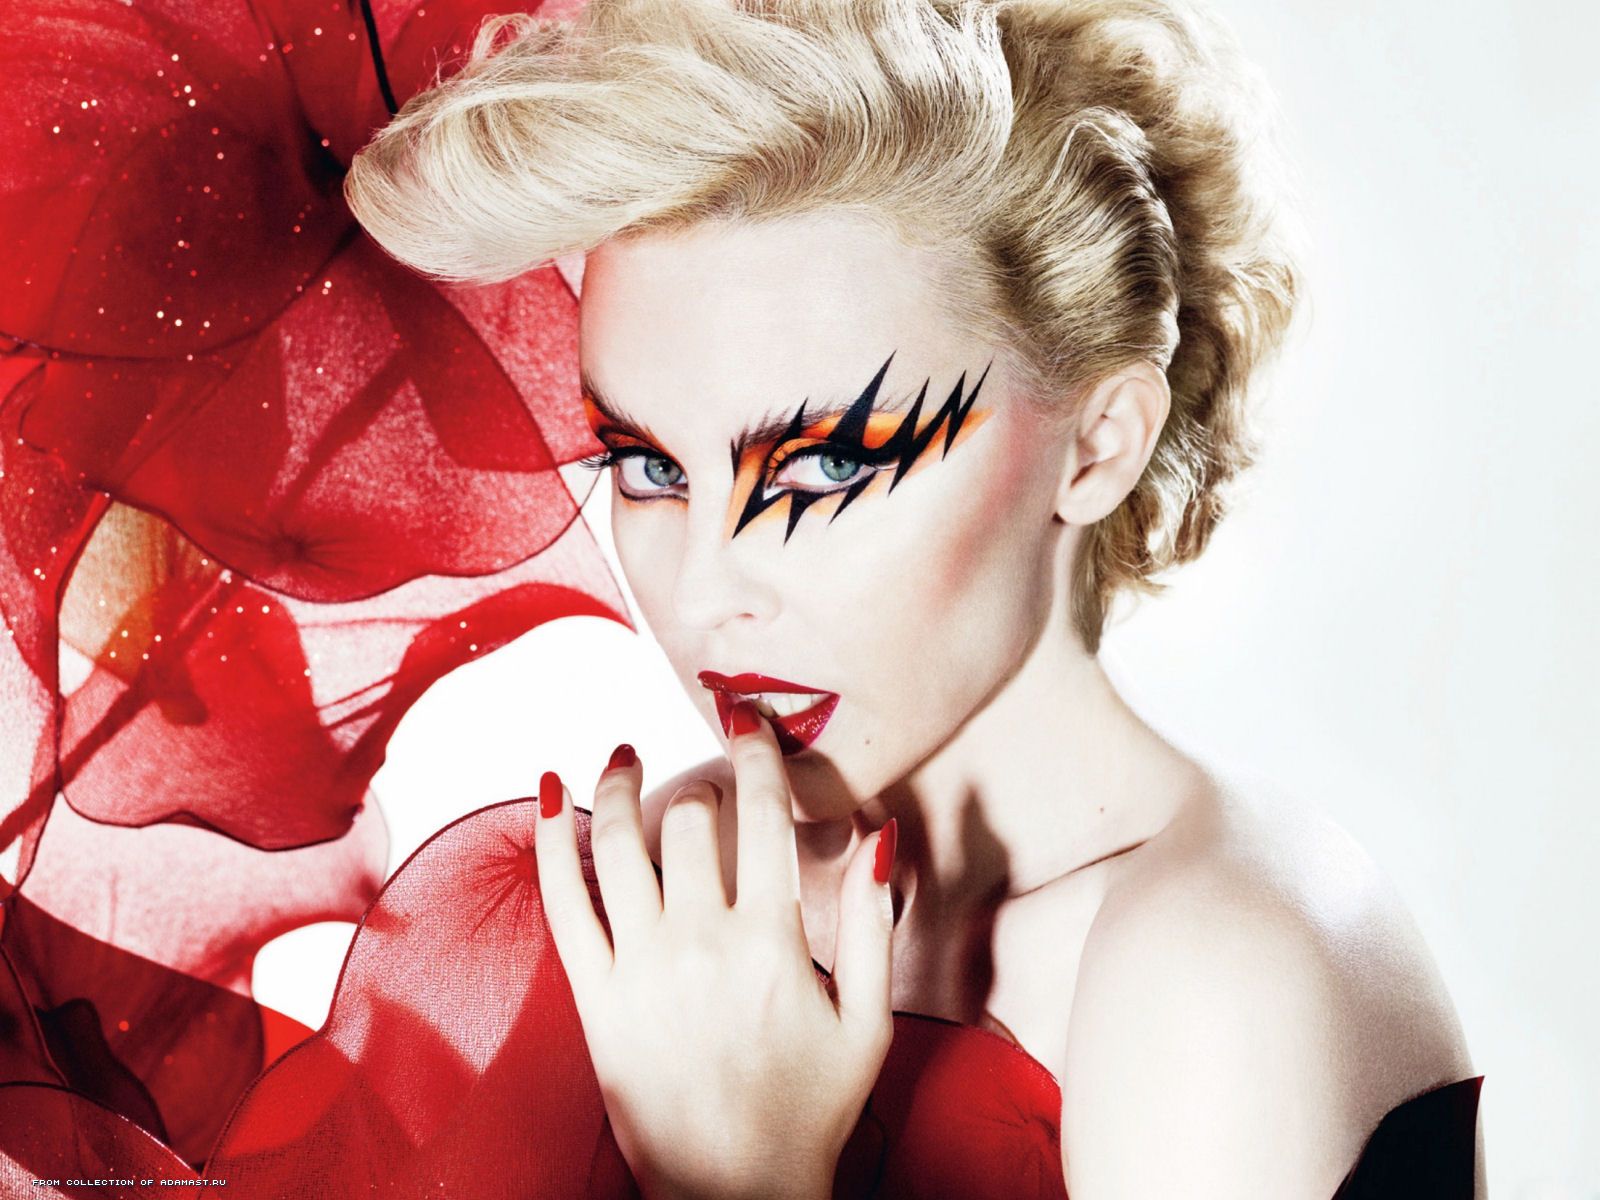 Fonds d'ecran Kylie Minogue Musique télécharger photo